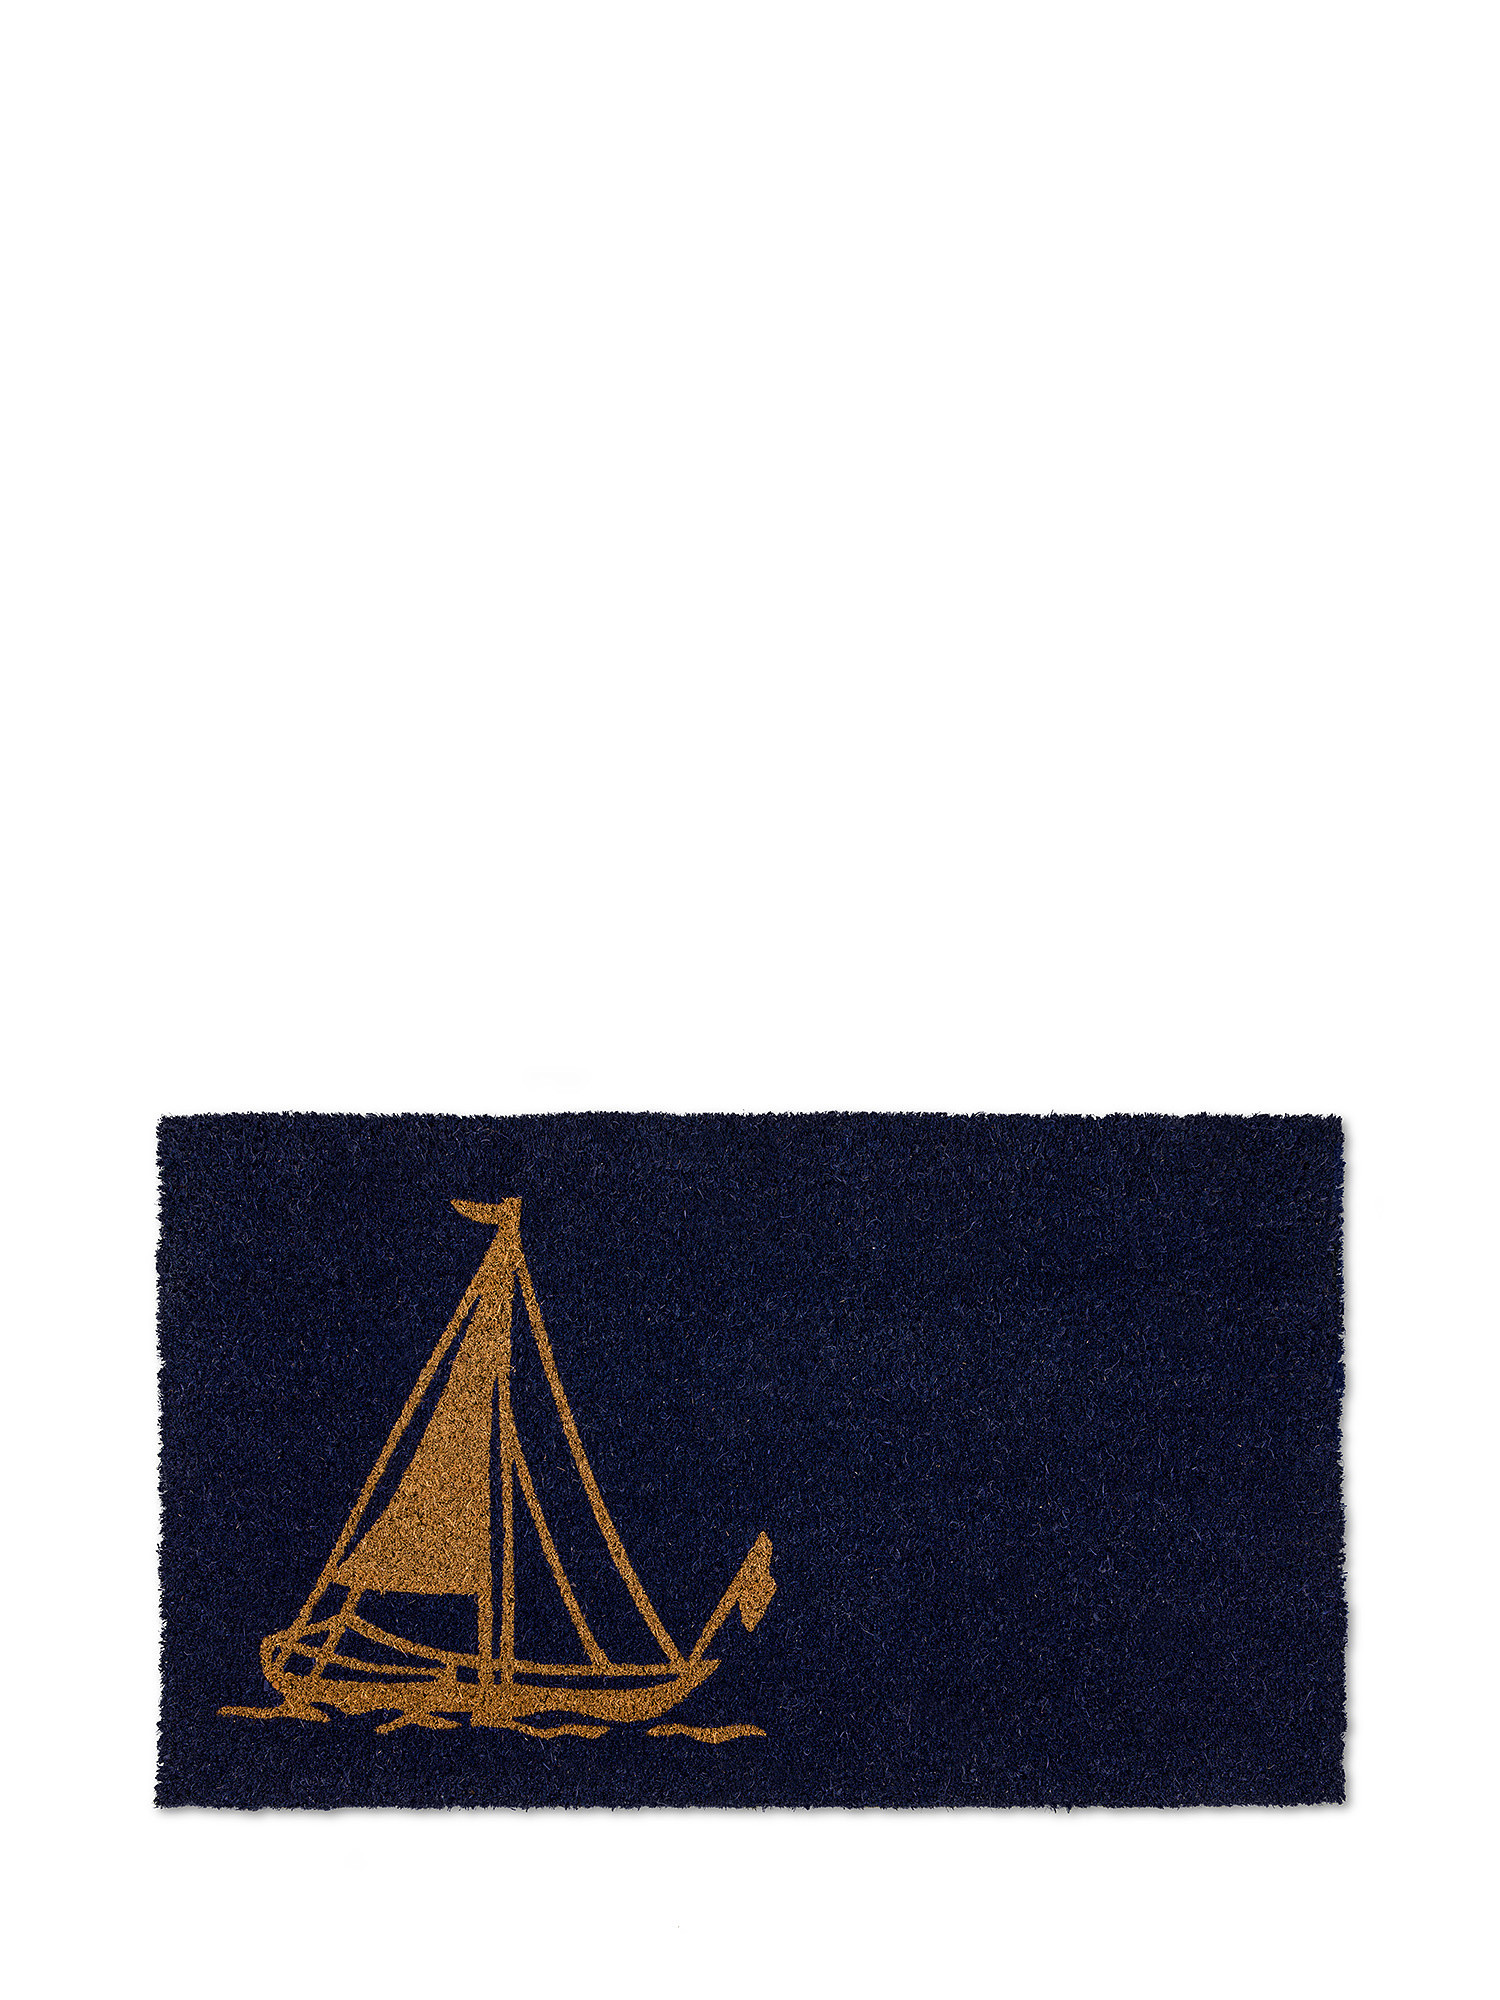 Zerbino stampa barca, Blu, large image number 0